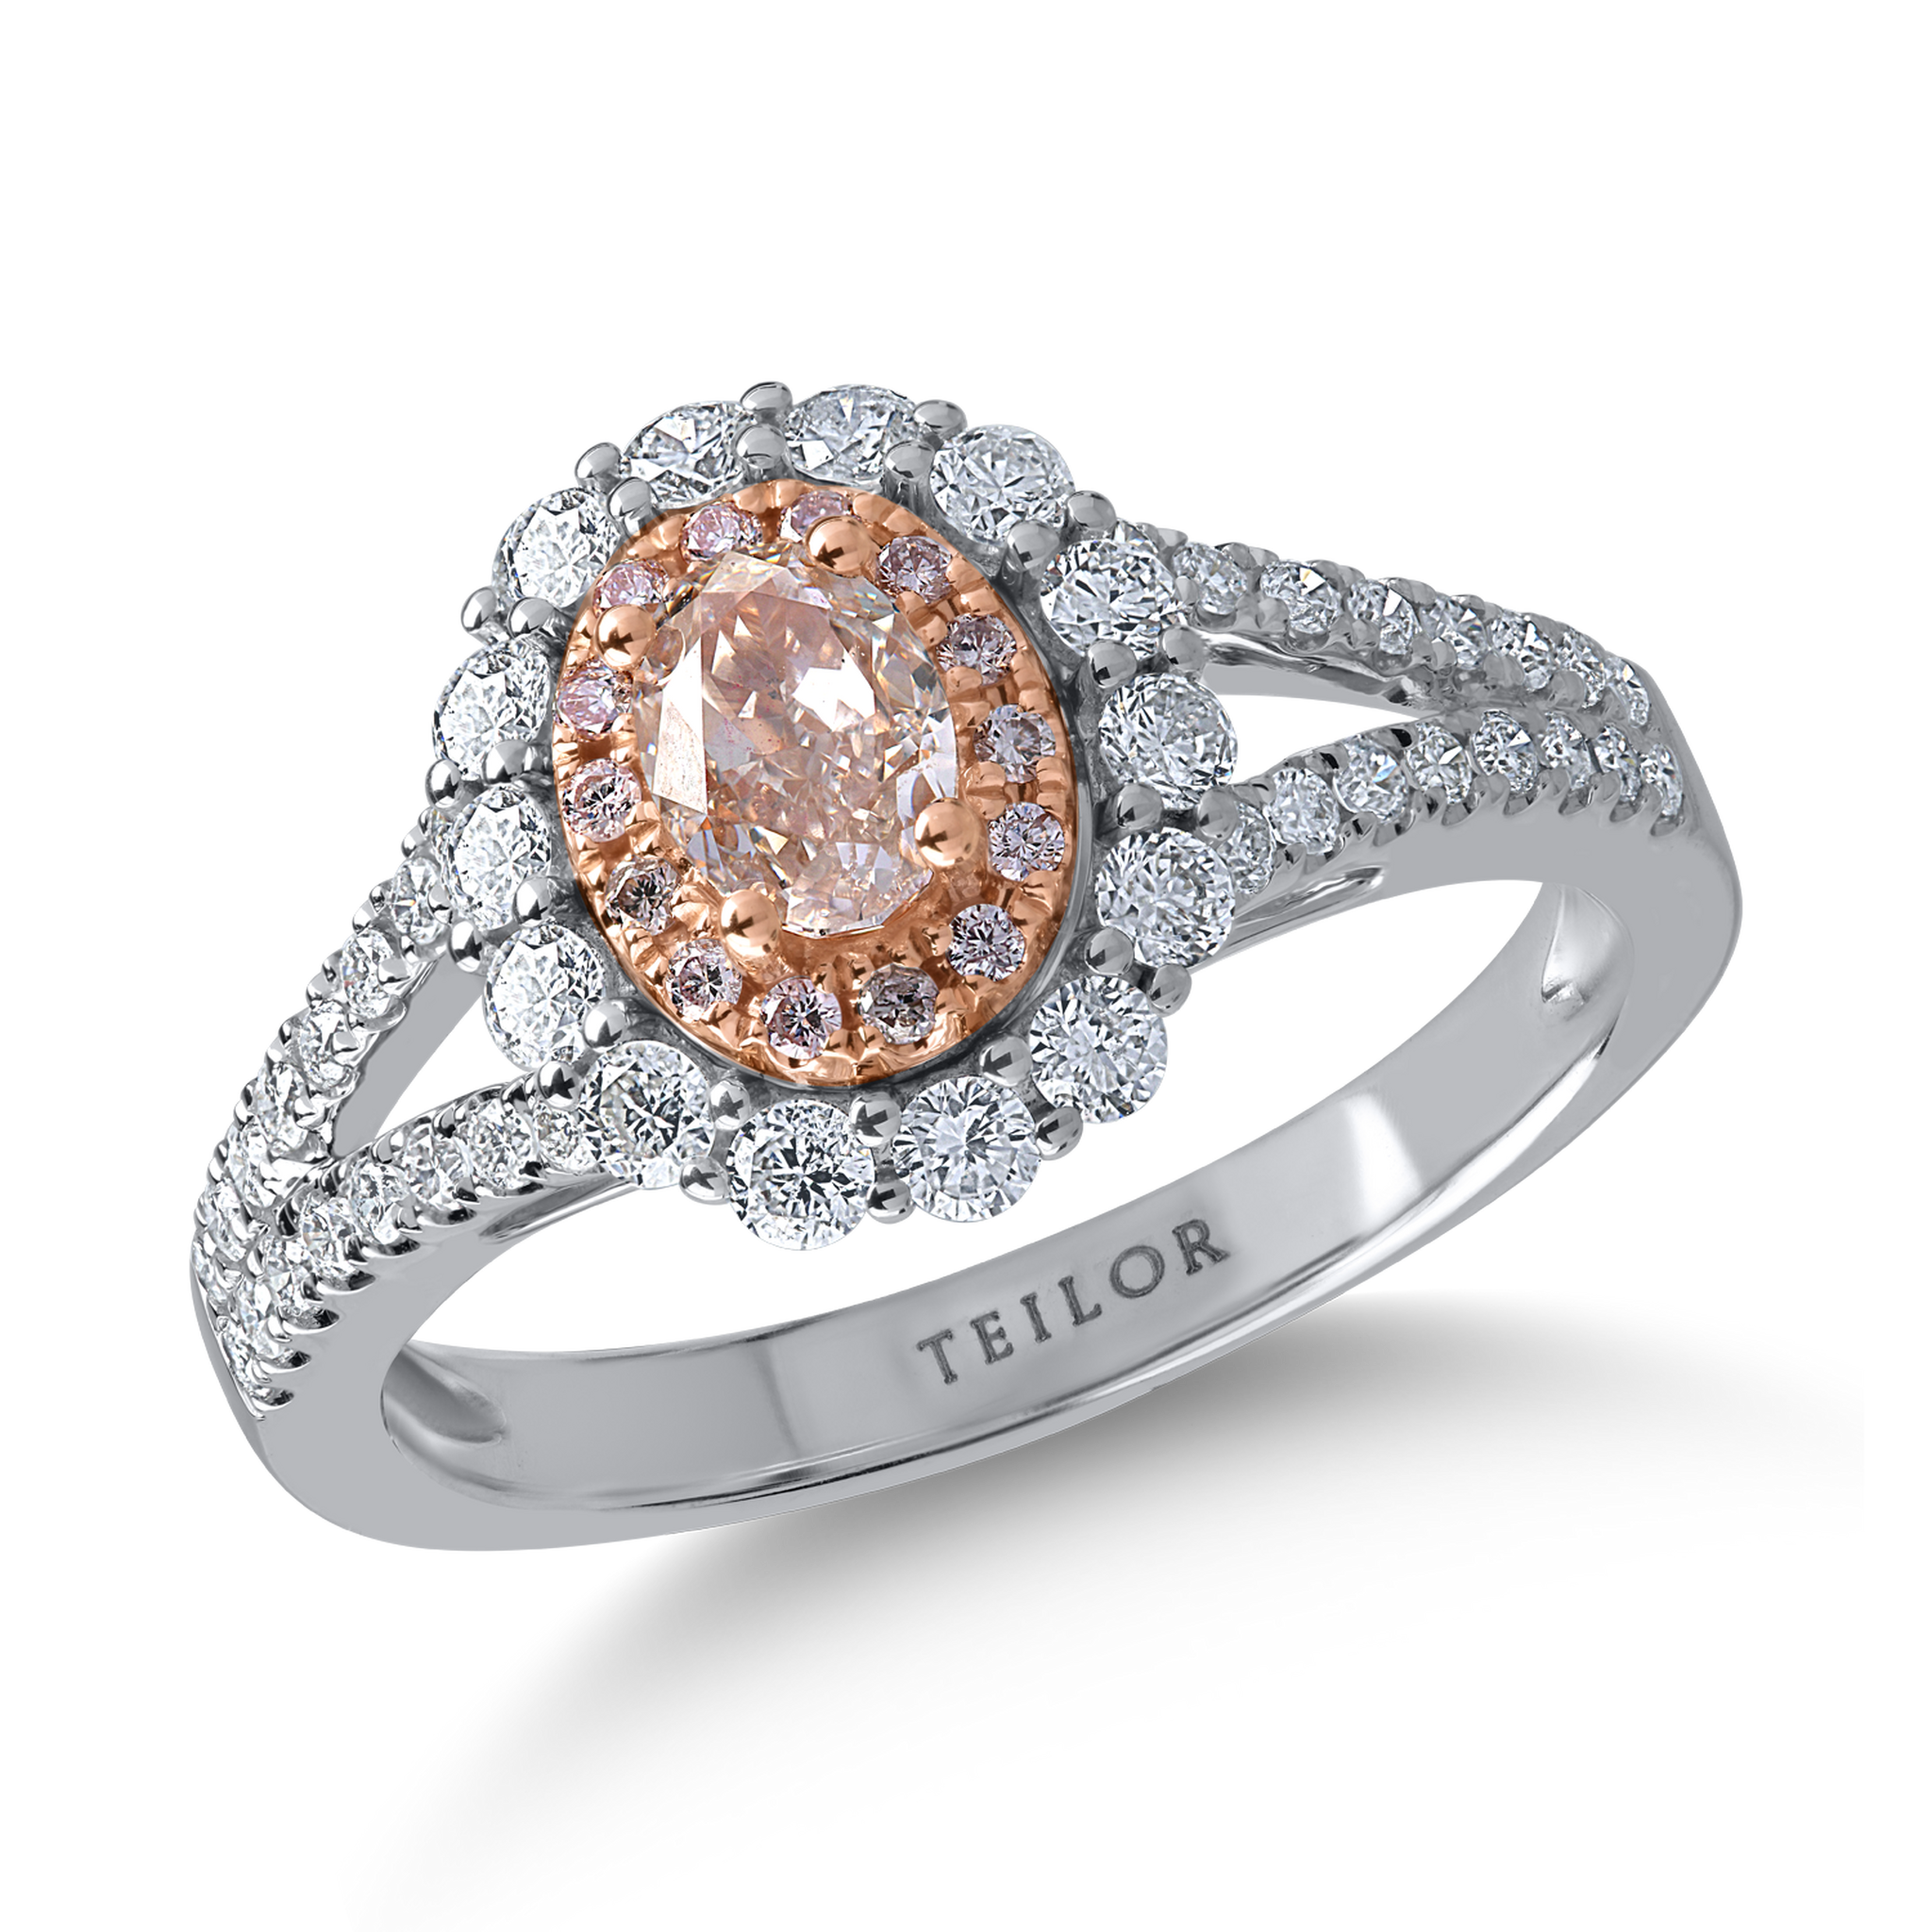 Pierścionek z białego różowego złota z bezbarwnymi diamentami o masie 0.59ct i różowymi diamentami o masie 0.58ct